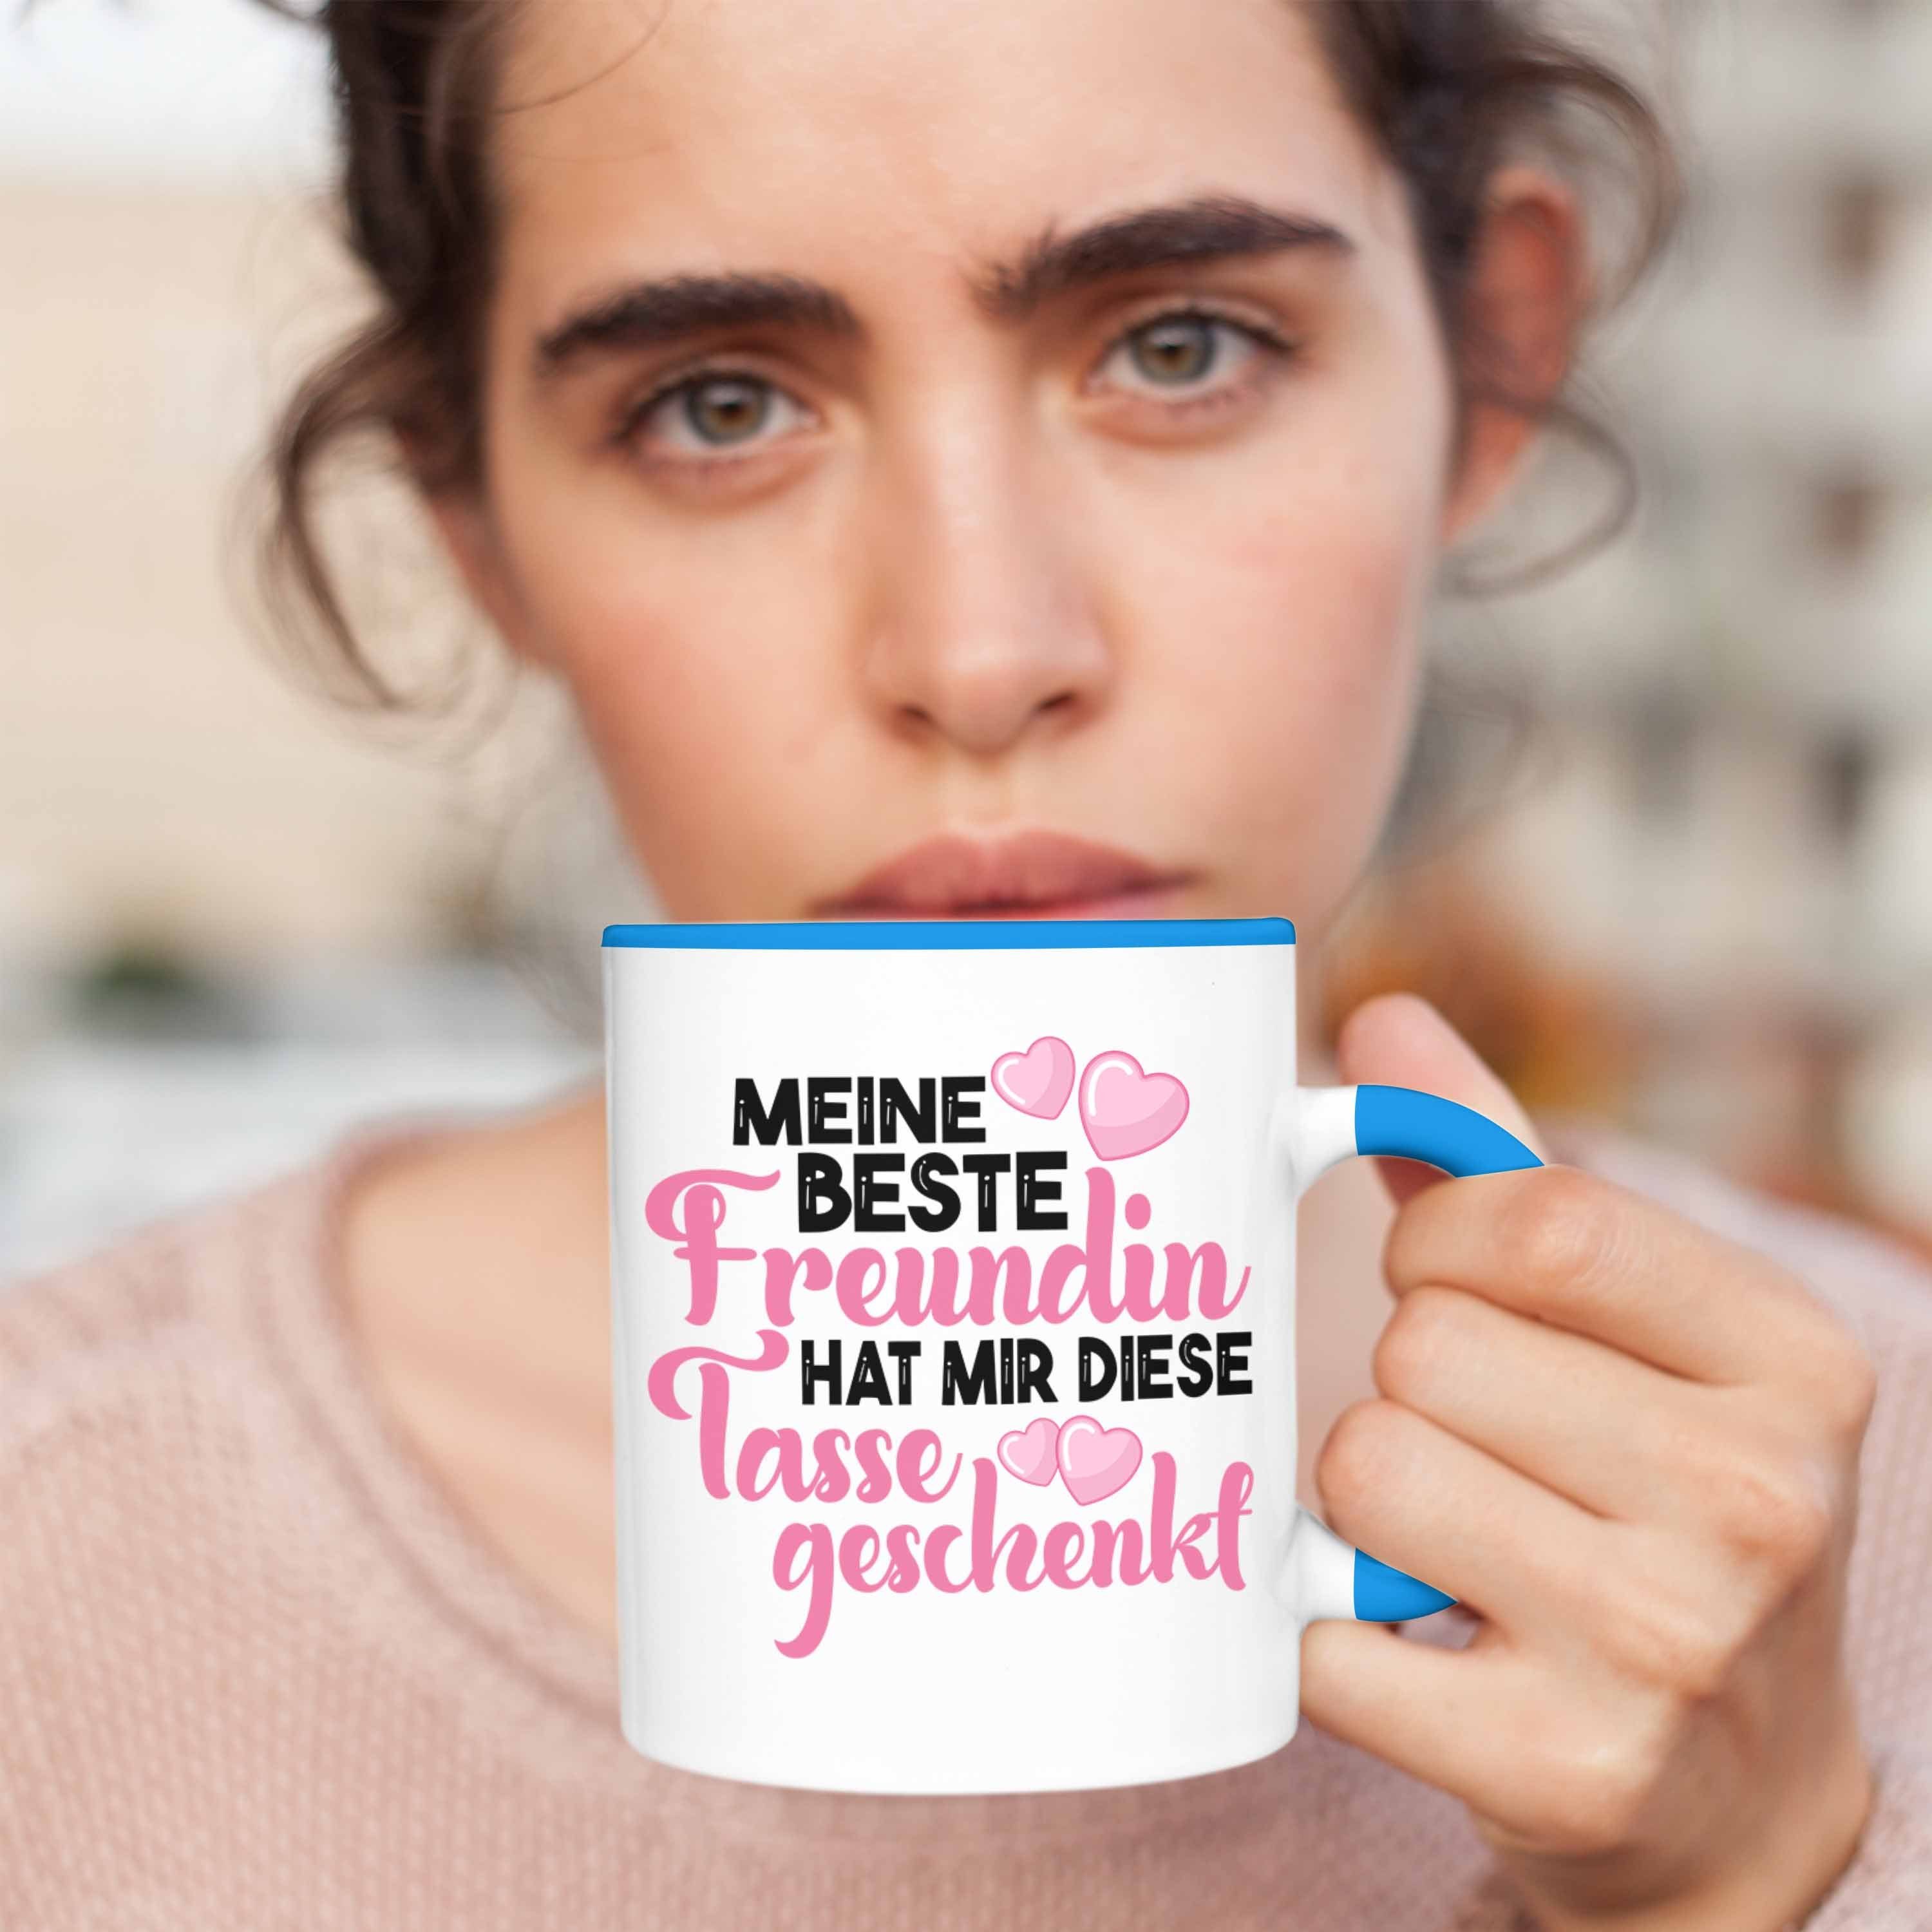 Beste Trendation Geschenk Freundinnen Tasse - Freundinnen Blau Schwester Lustig Freundin Unbiologische Spruch Tasse Becher Trendation Beste Geburtstag